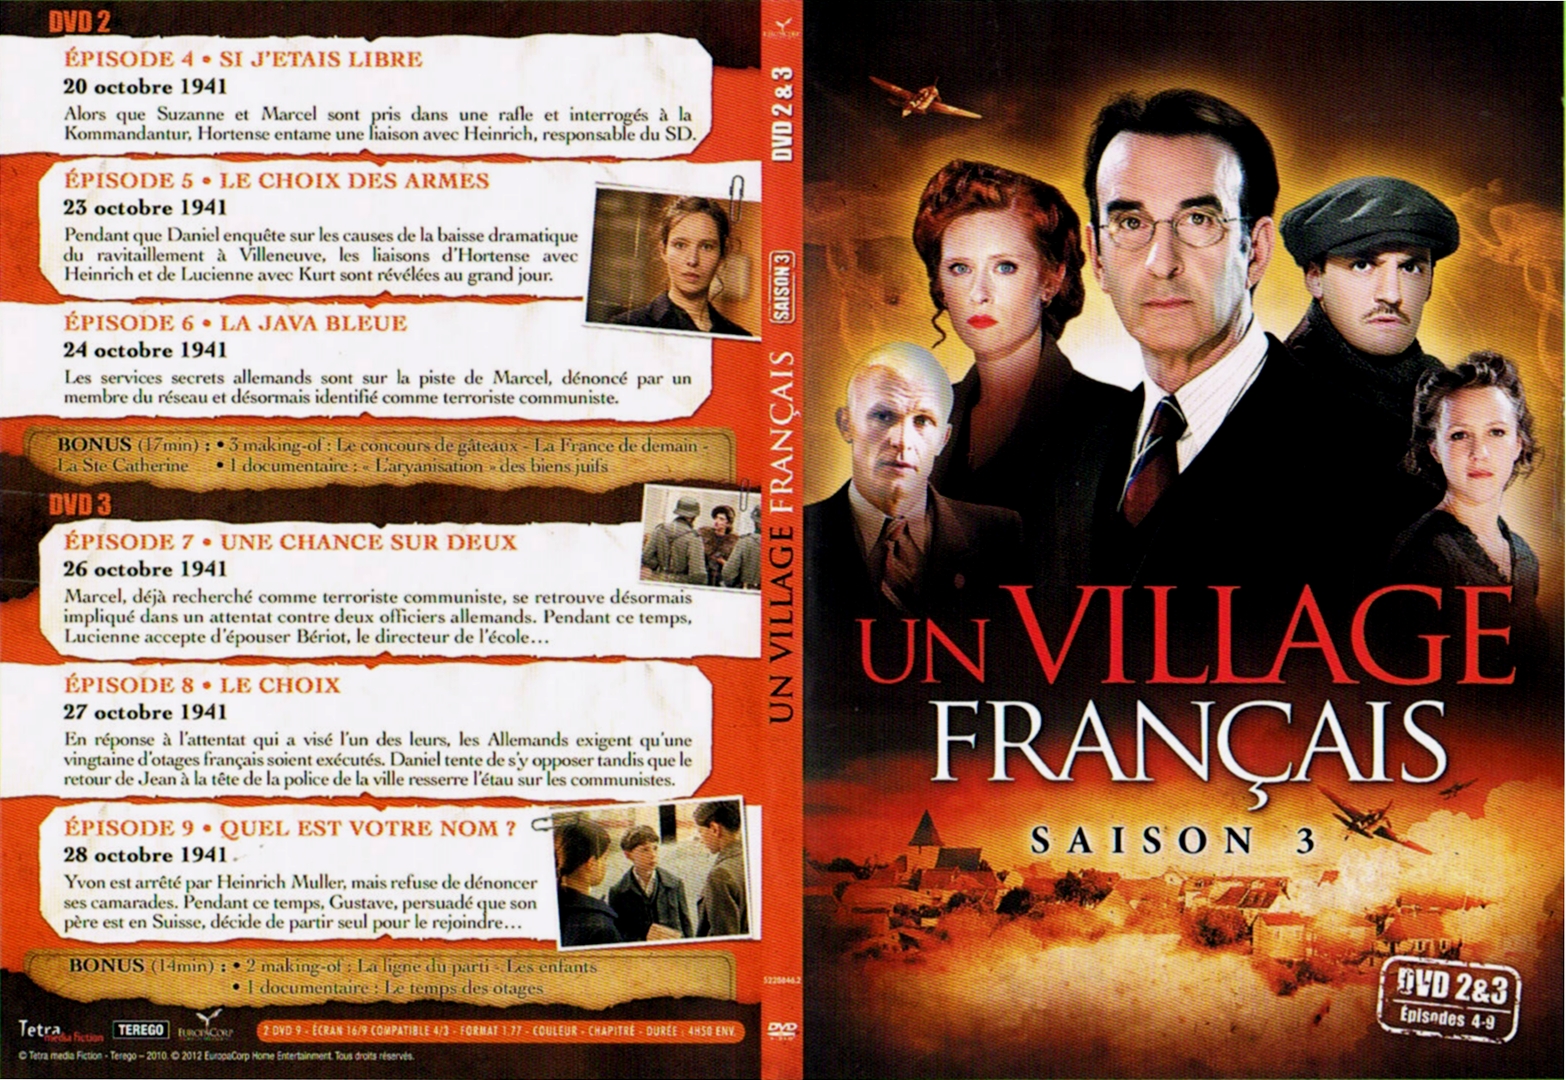 Jaquette DVD Un village francais Saison 3 DVD 2